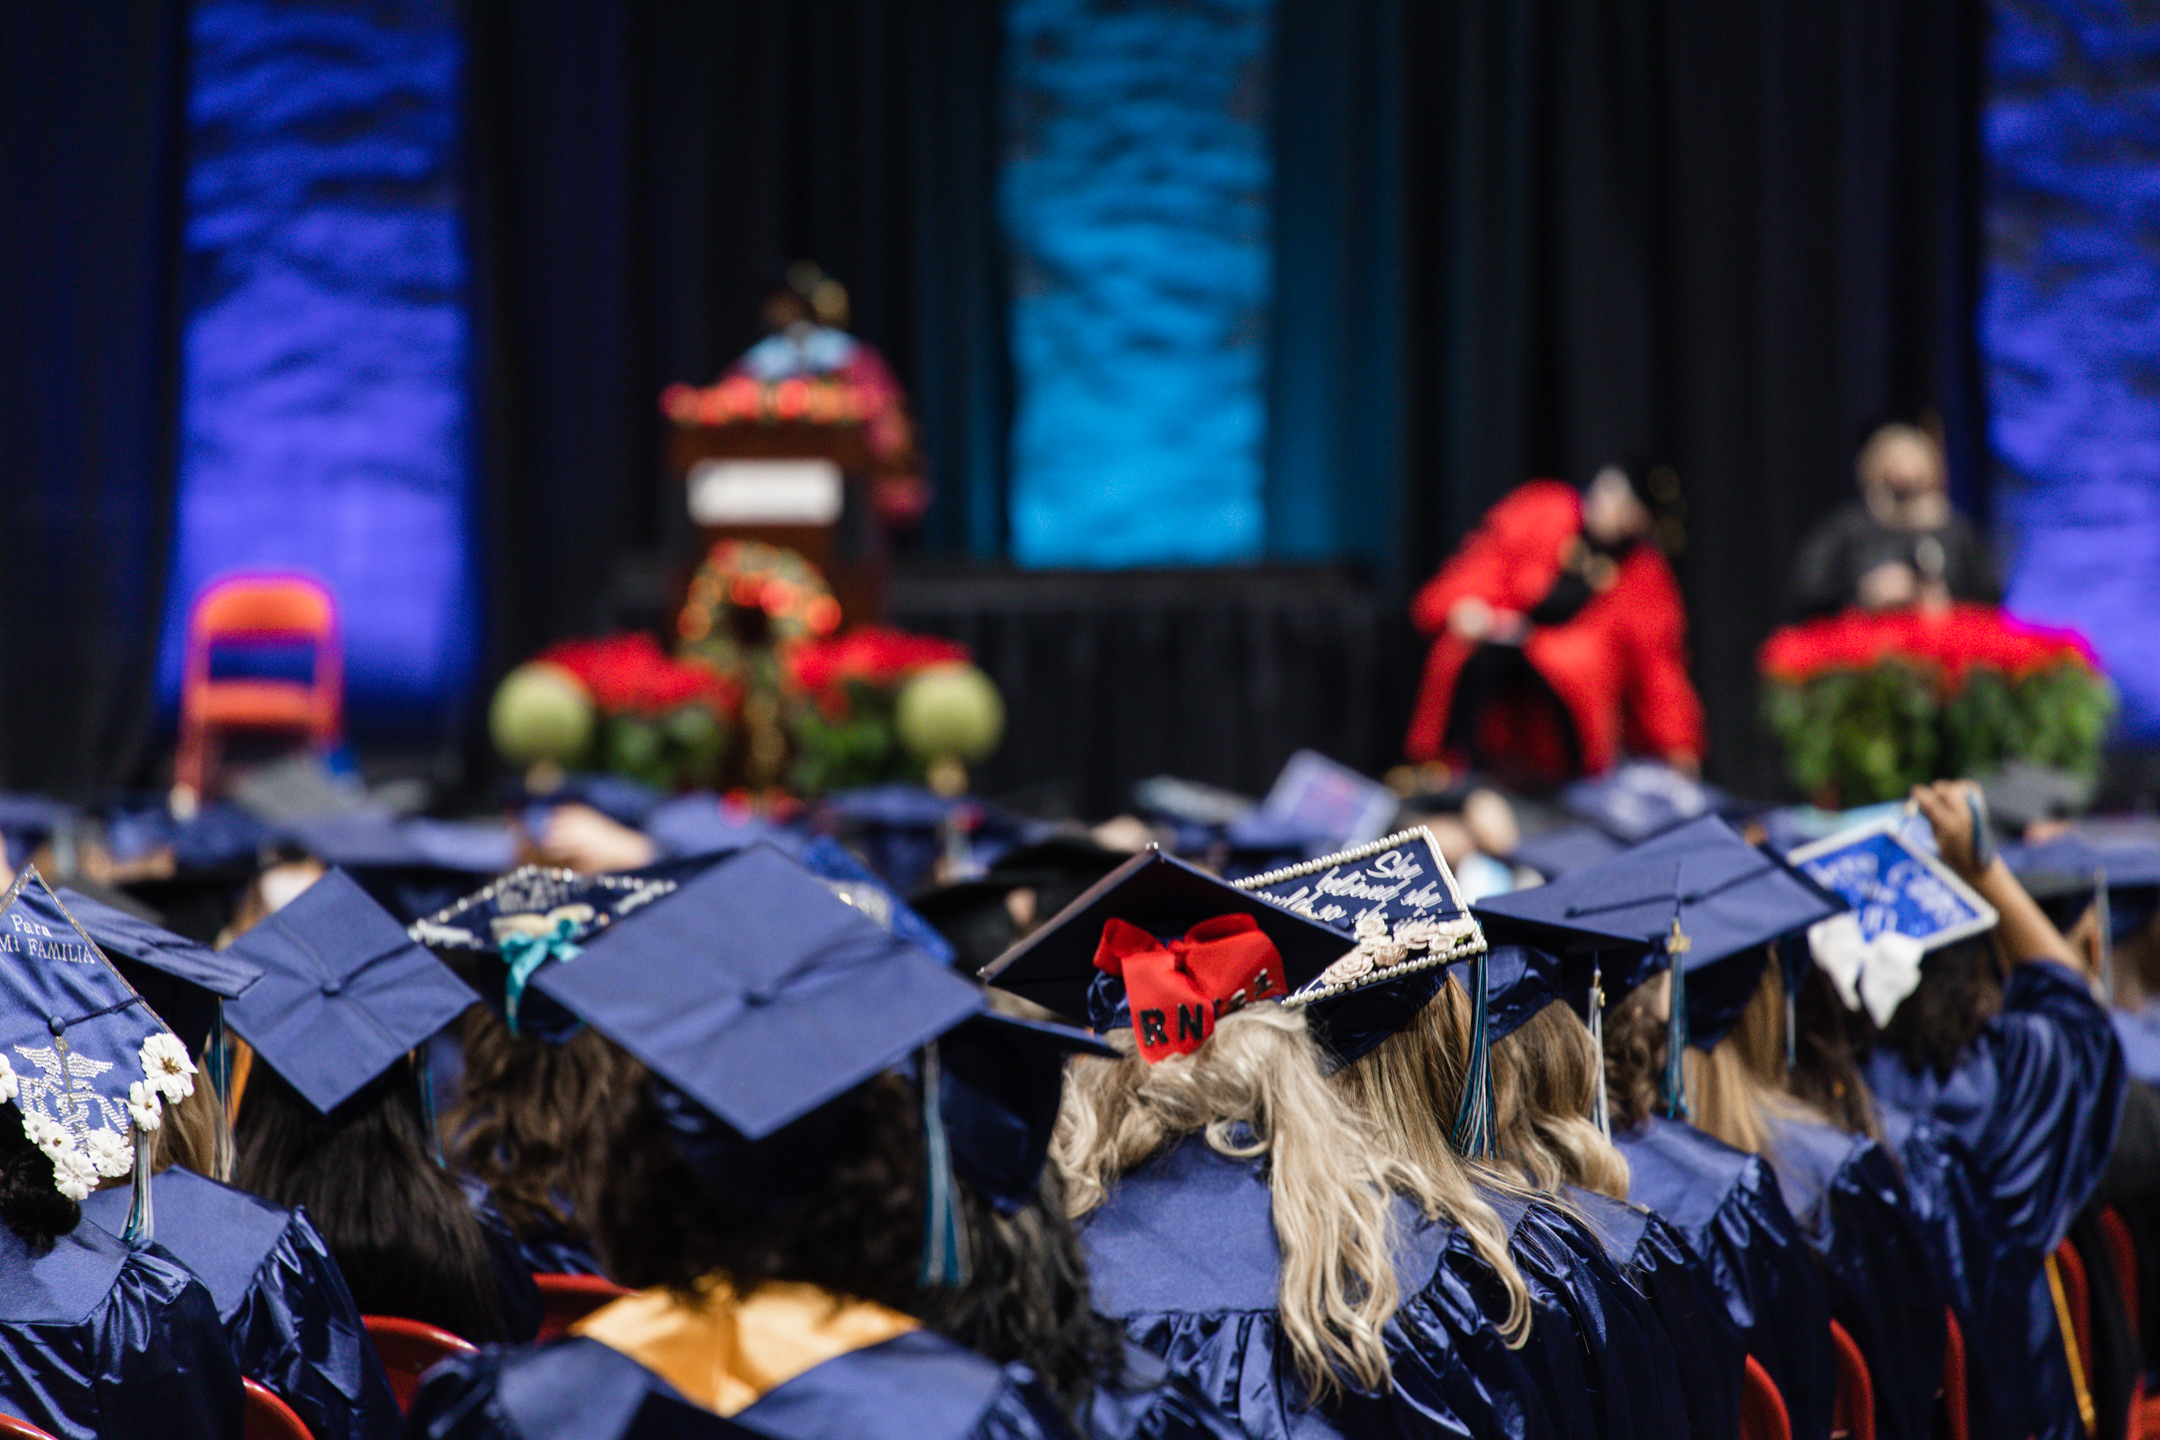 NWTC proudly celebrates 1,400 graduates at its mid-year celebration ceremony